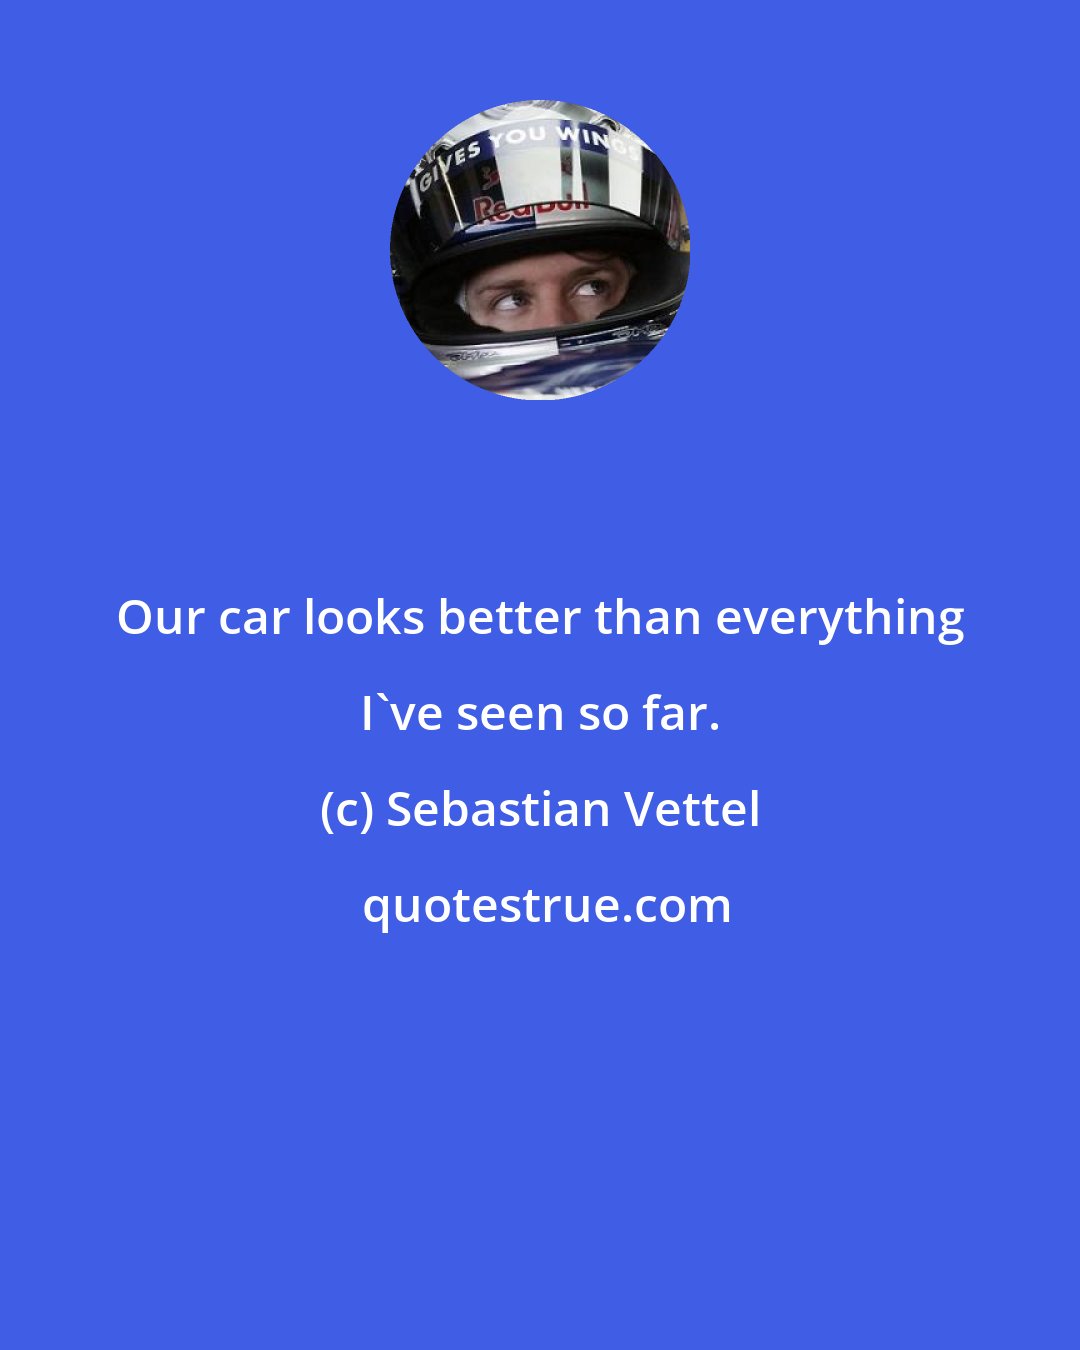 Sebastian Vettel: Our car looks better than everything I've seen so far.